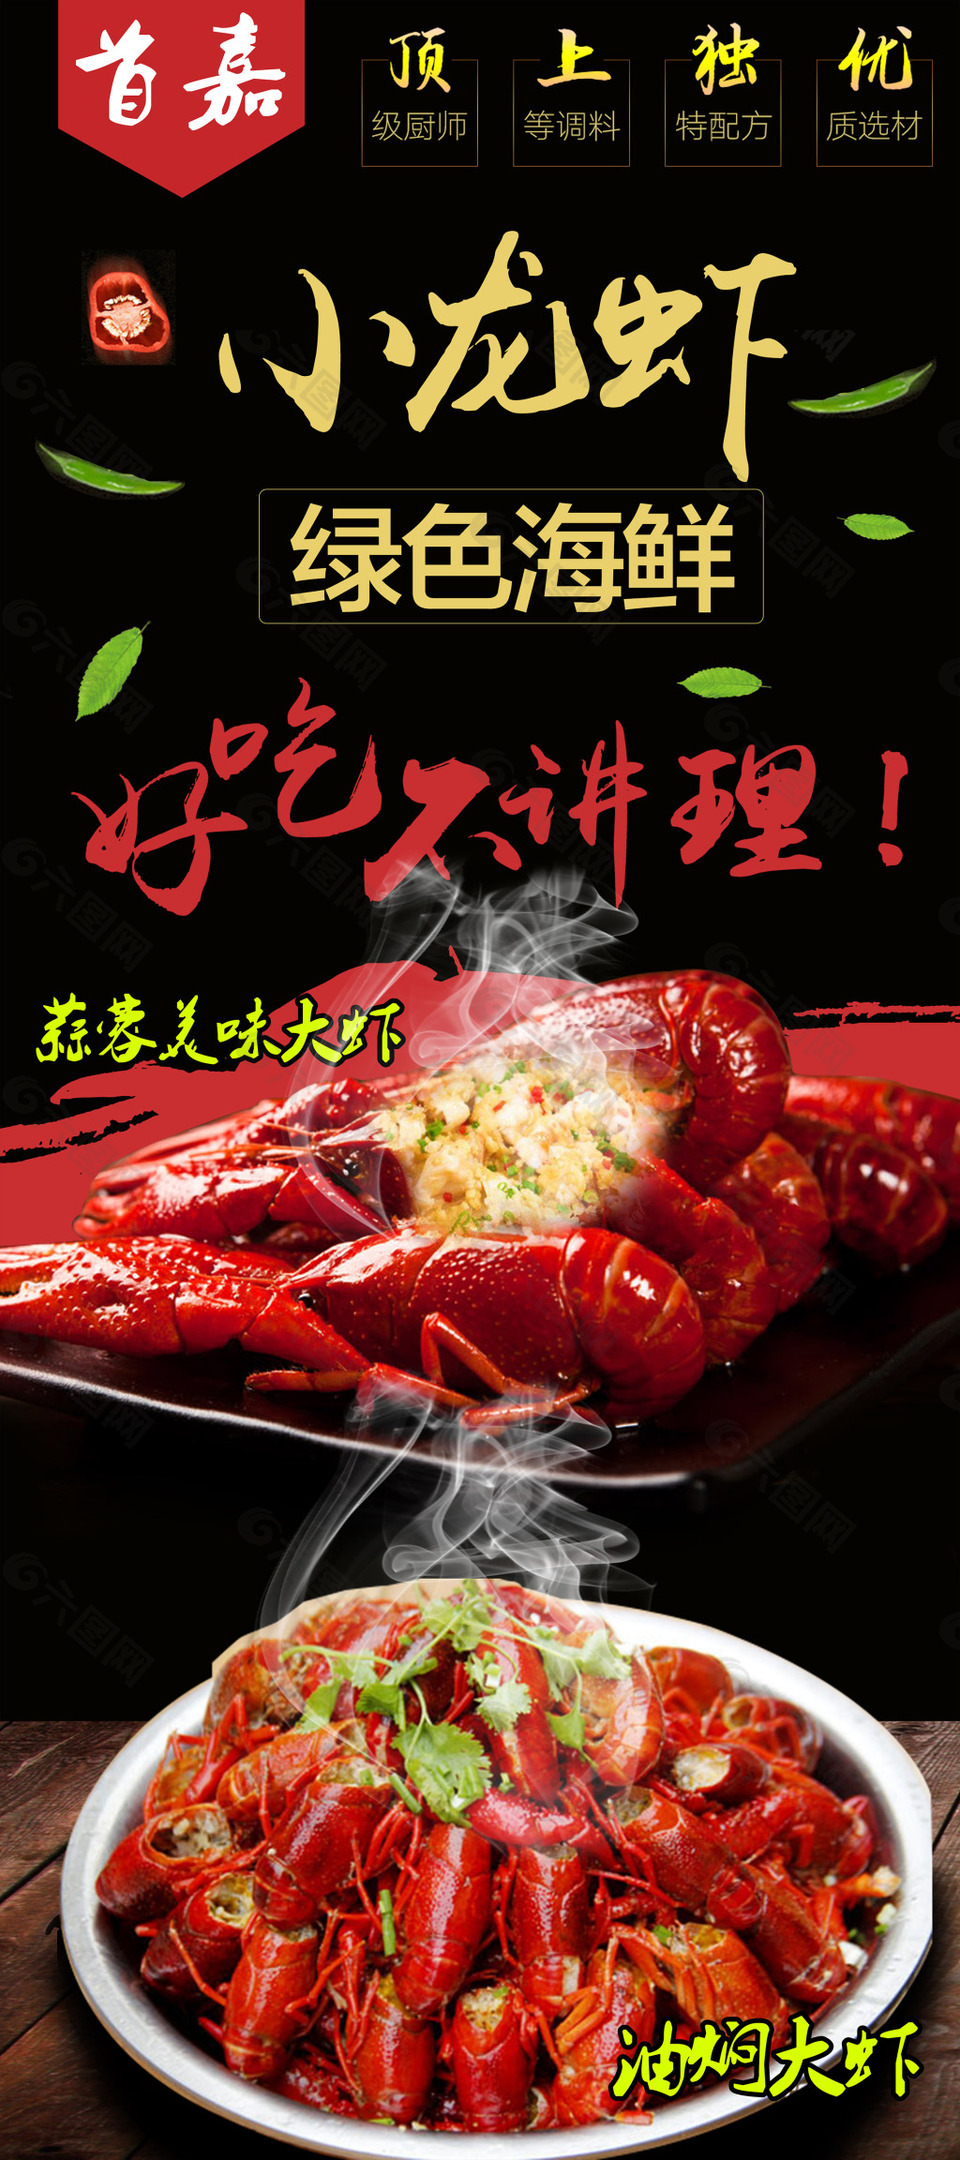 油焖大虾广告语图片